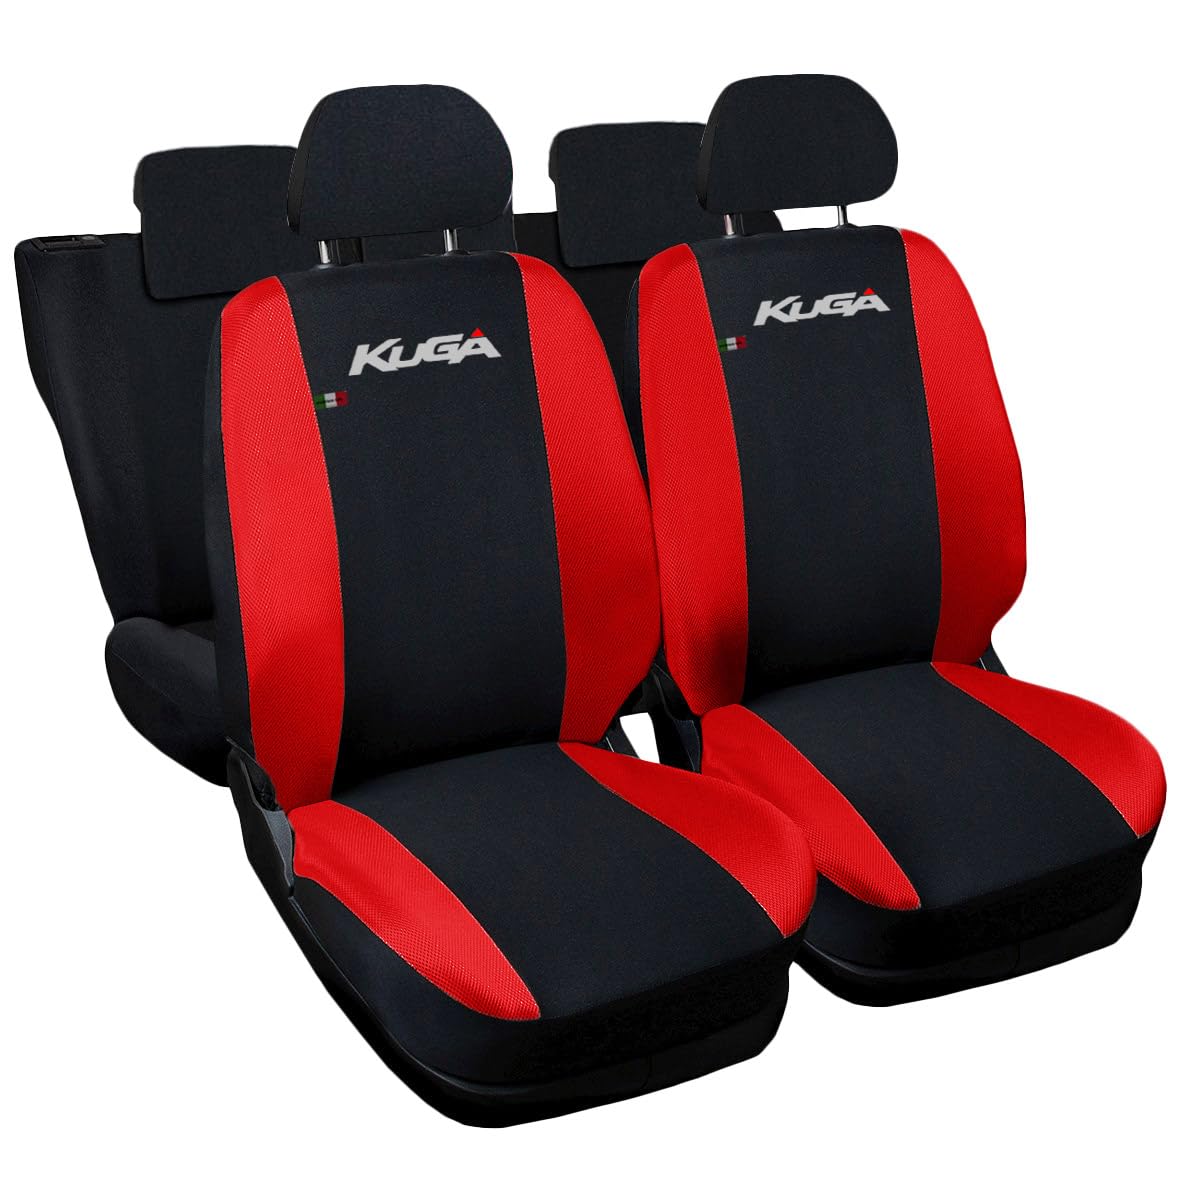 Lupex Shop Autositzbezüge kompatibel mit Kuga, Made in Italy, Polyestergewebe, kompletter Satz Vorder- und Rücksitze (Schwarz - Rot) von Lupex Shop